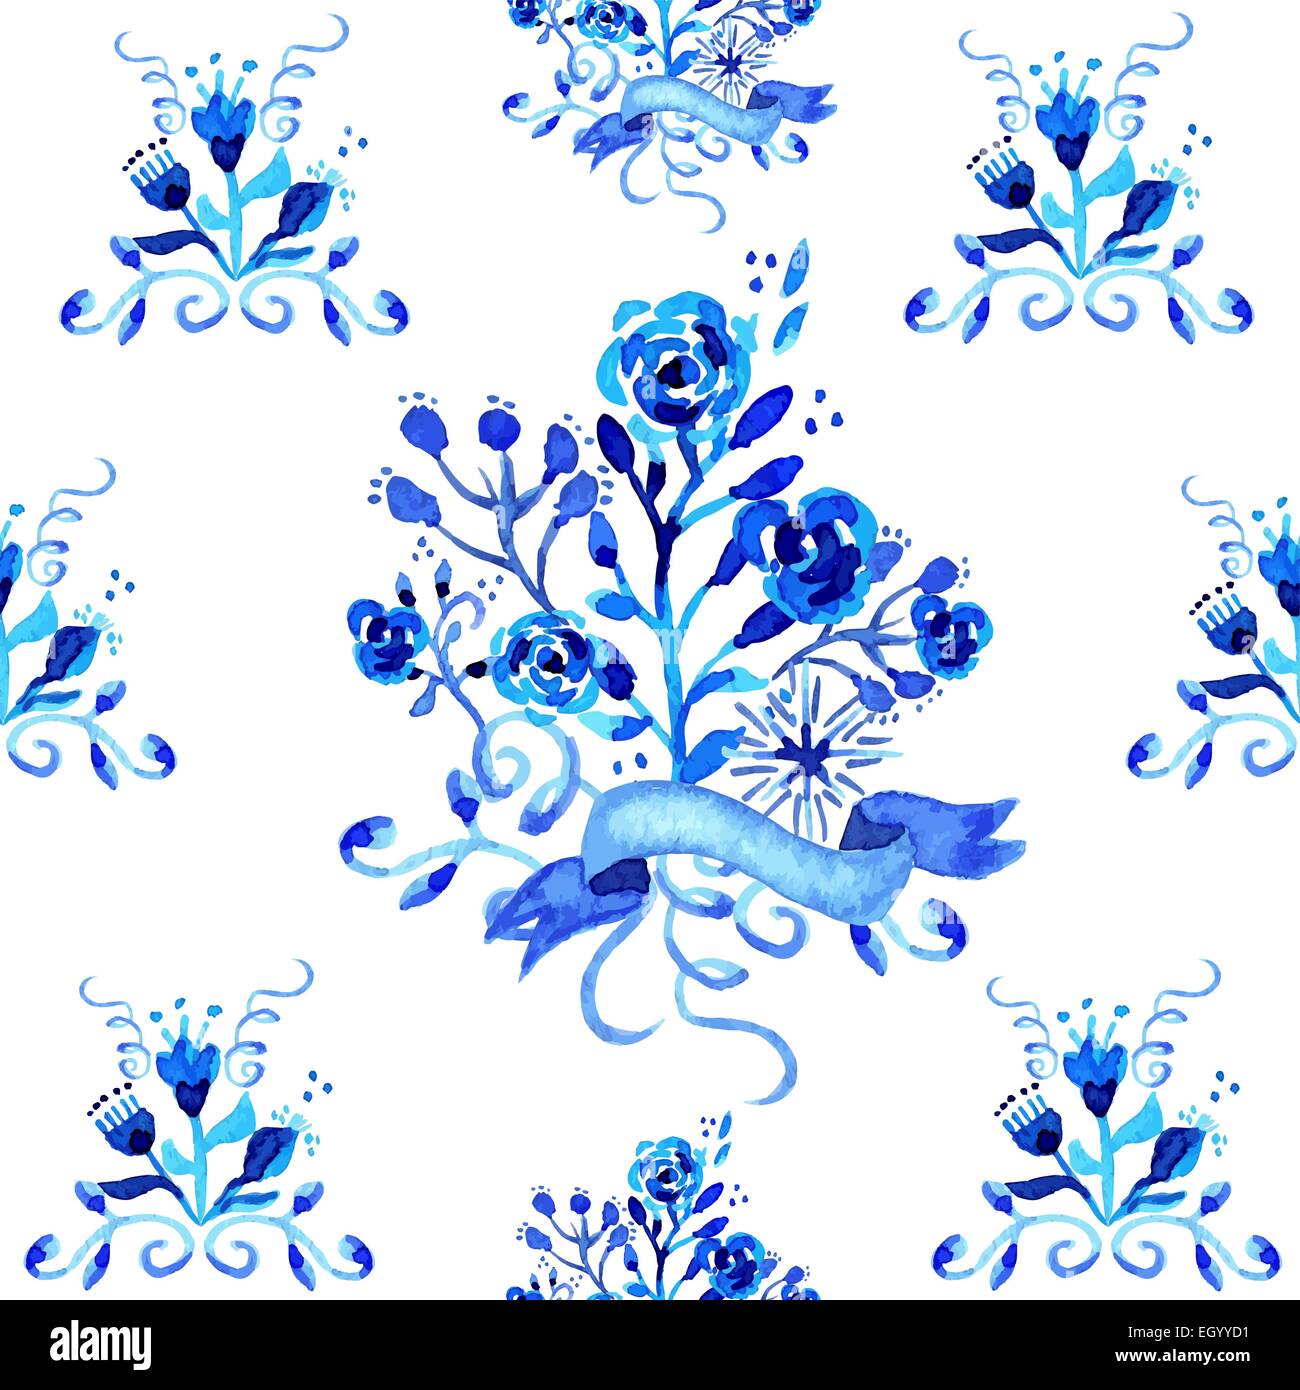 Floral vintage aquarelle illustration très tendance. Les fleurs et les feuilles fabriqués à la main en couleur bleue. Idéal pour mariage, anniversaire Illustration de Vecteur